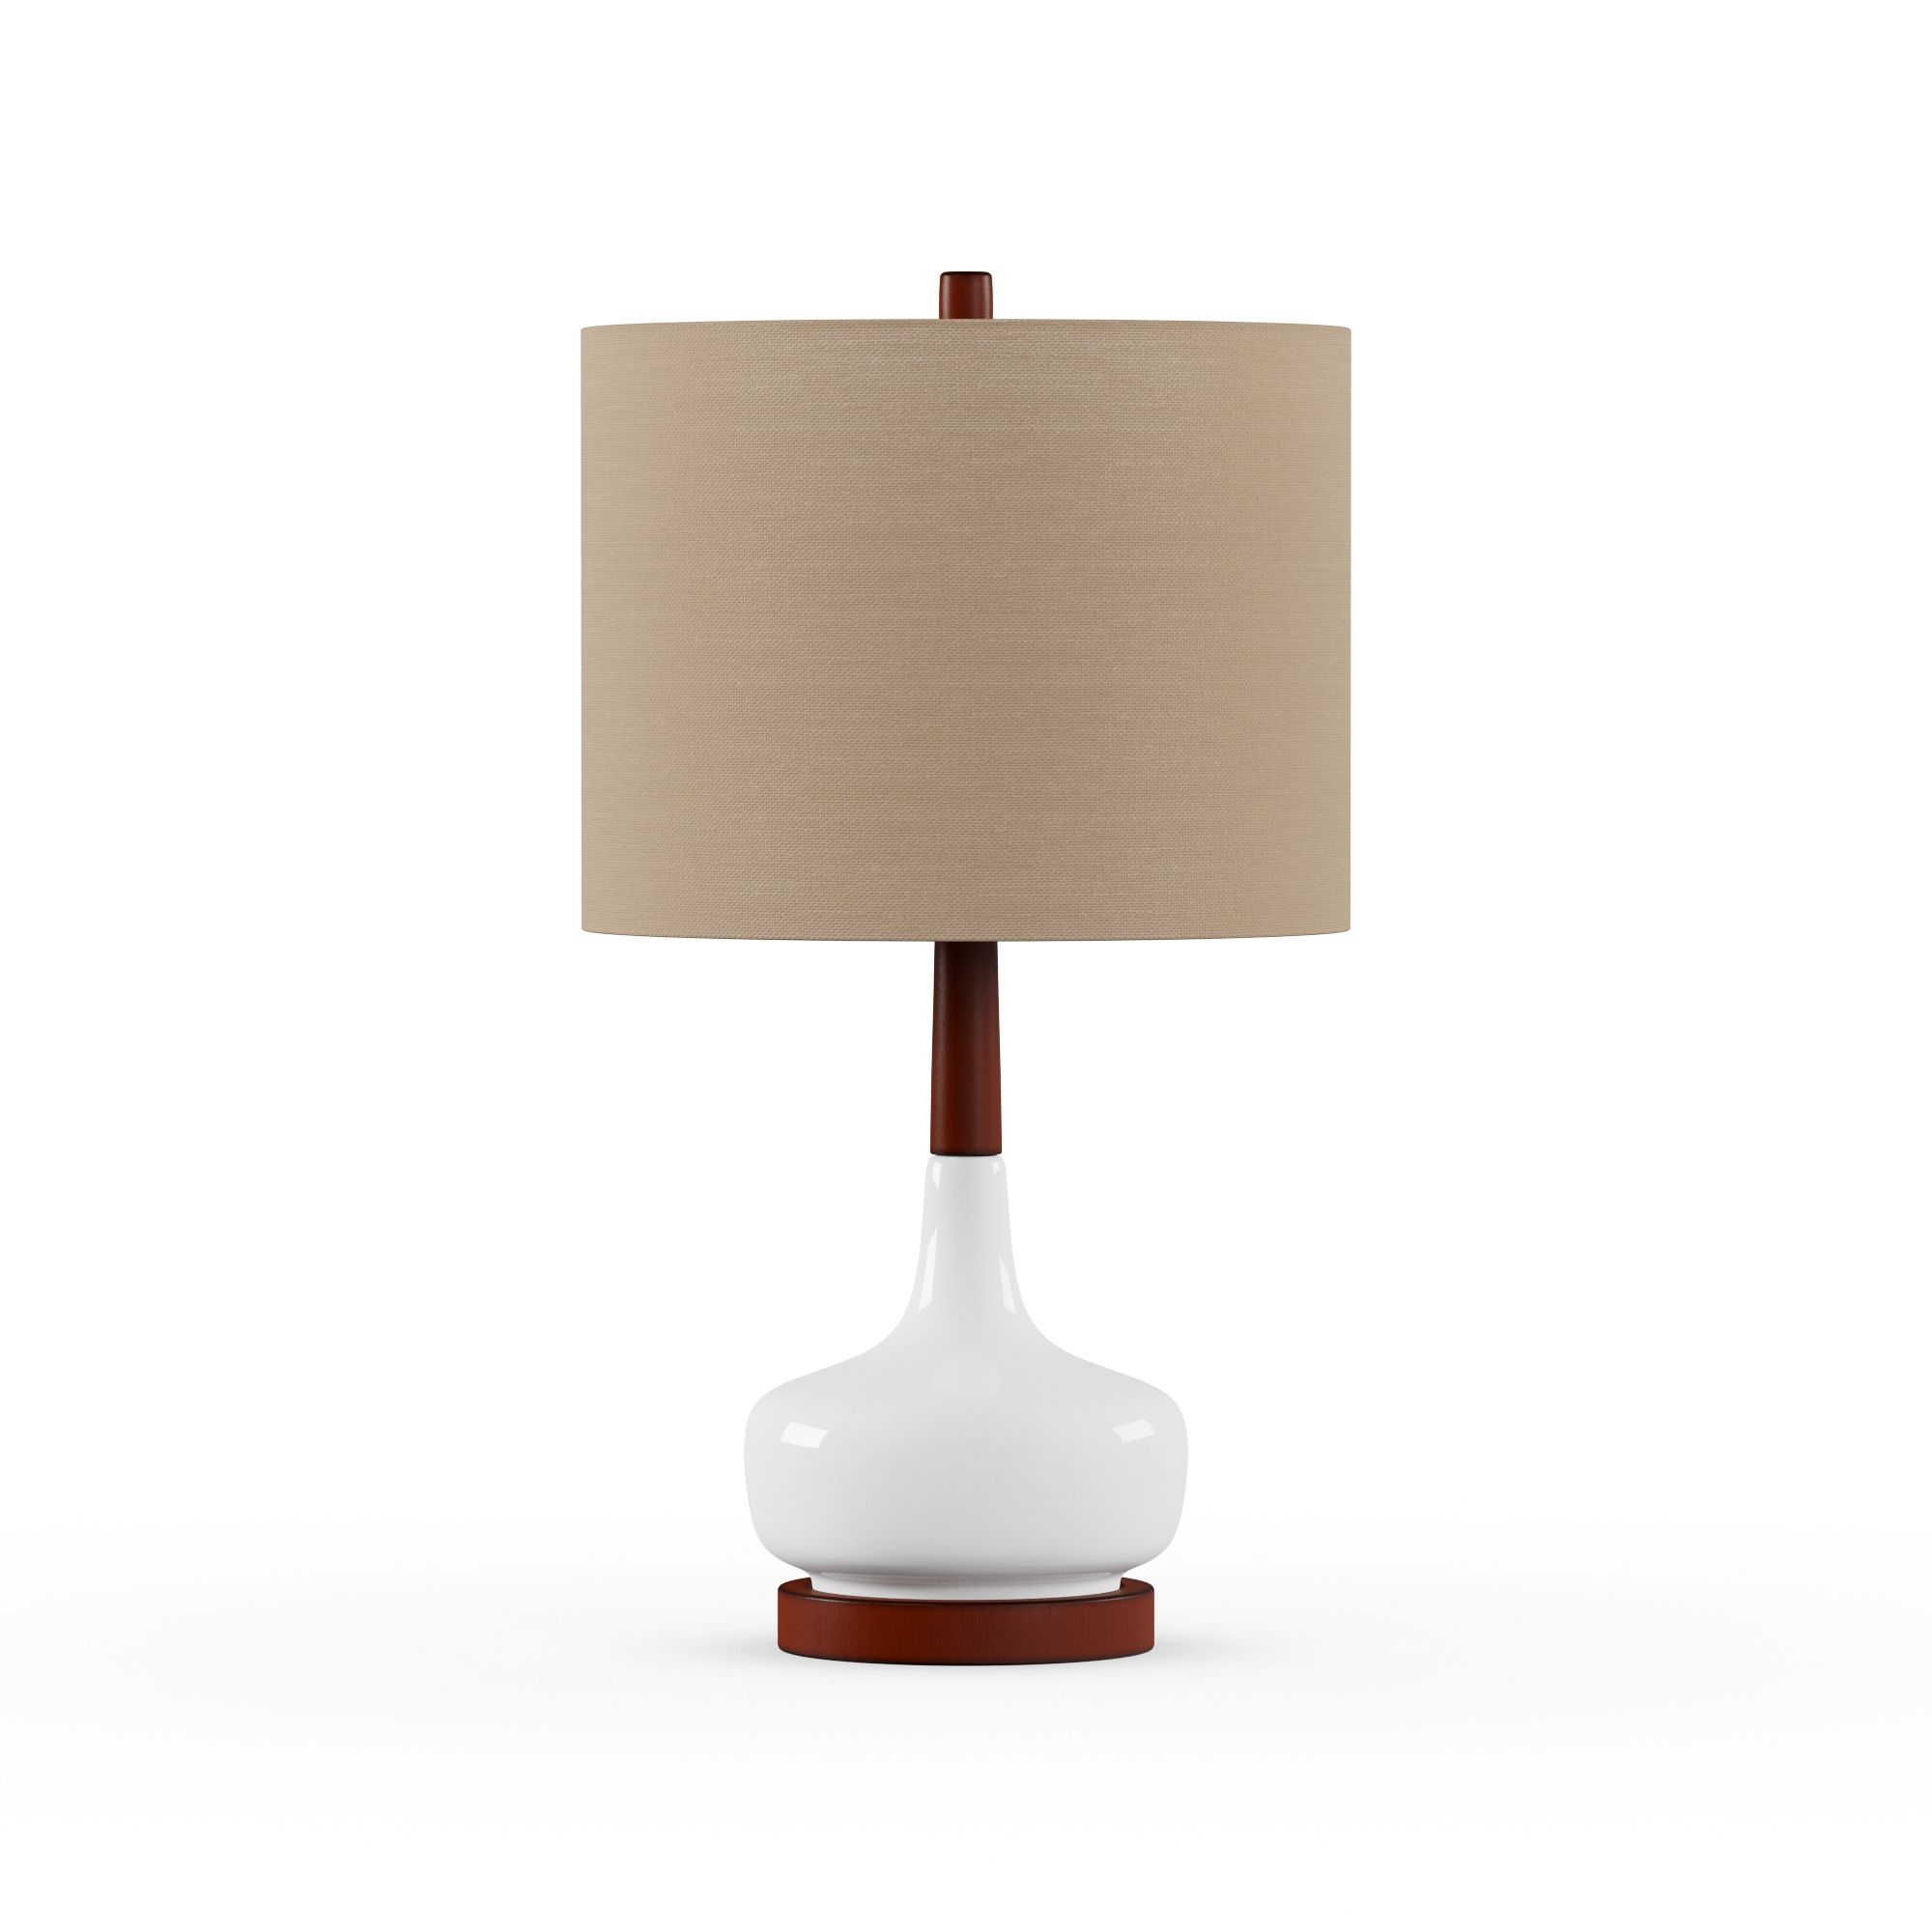 Modrn Ceramic and Wood Table Lamp | Walmart (US)